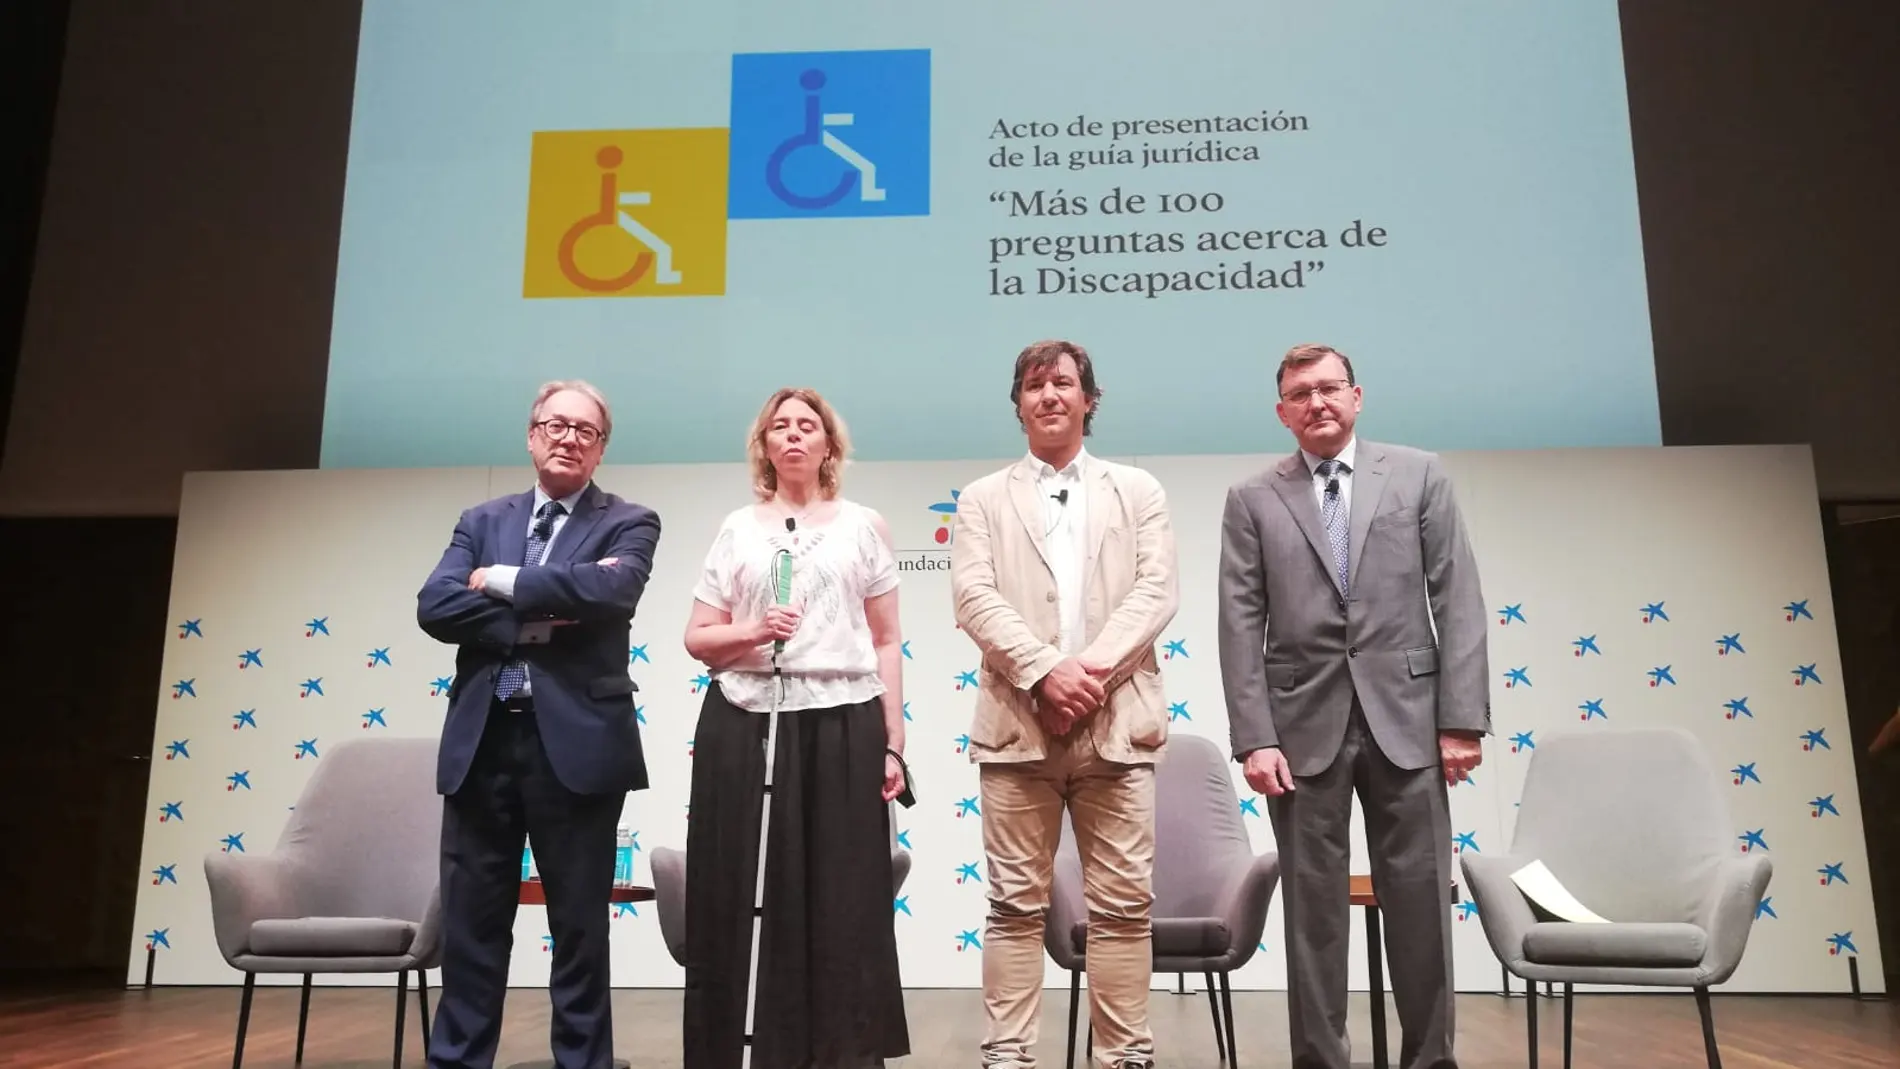 Marc Simón, Virginia Carcedo, Gregorio Saravia y José Ángel Martínez Sanchiz en la presentación de la guía